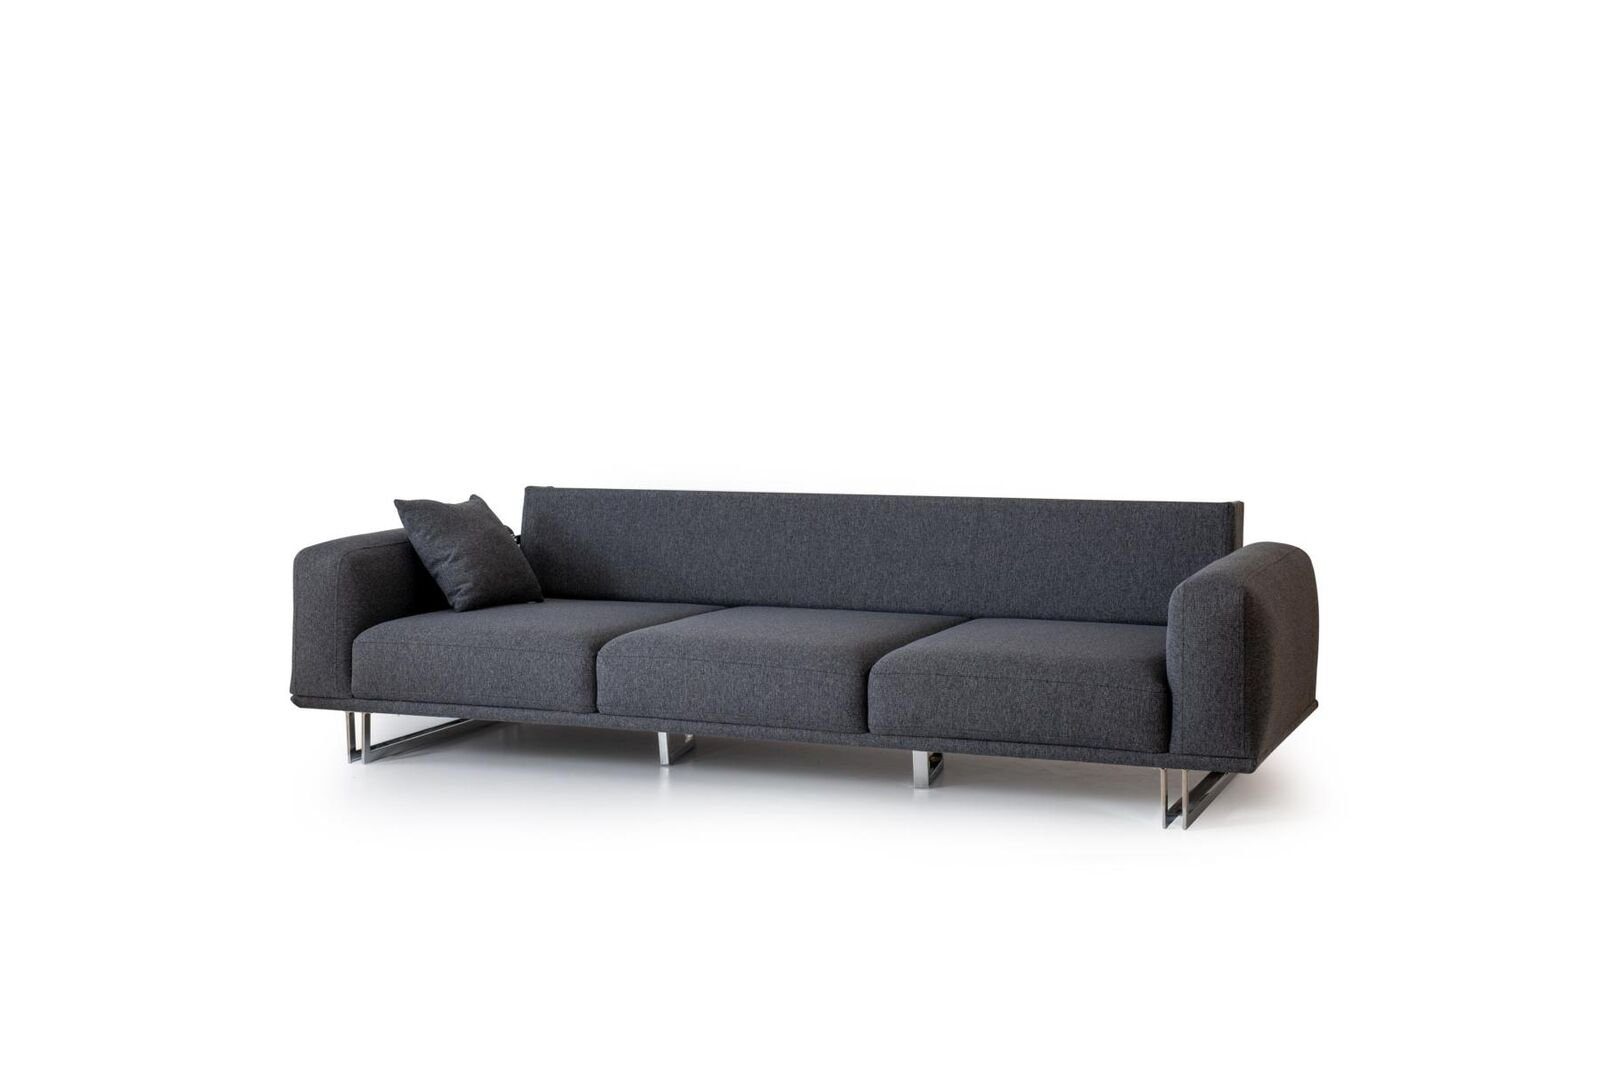 Europa Textil 1 4-Sitzer Relax Sofa in Teile, Made 4 Couchen Viersitzer Sofas, Couch JVmoebel Sitzer Bettfunktion